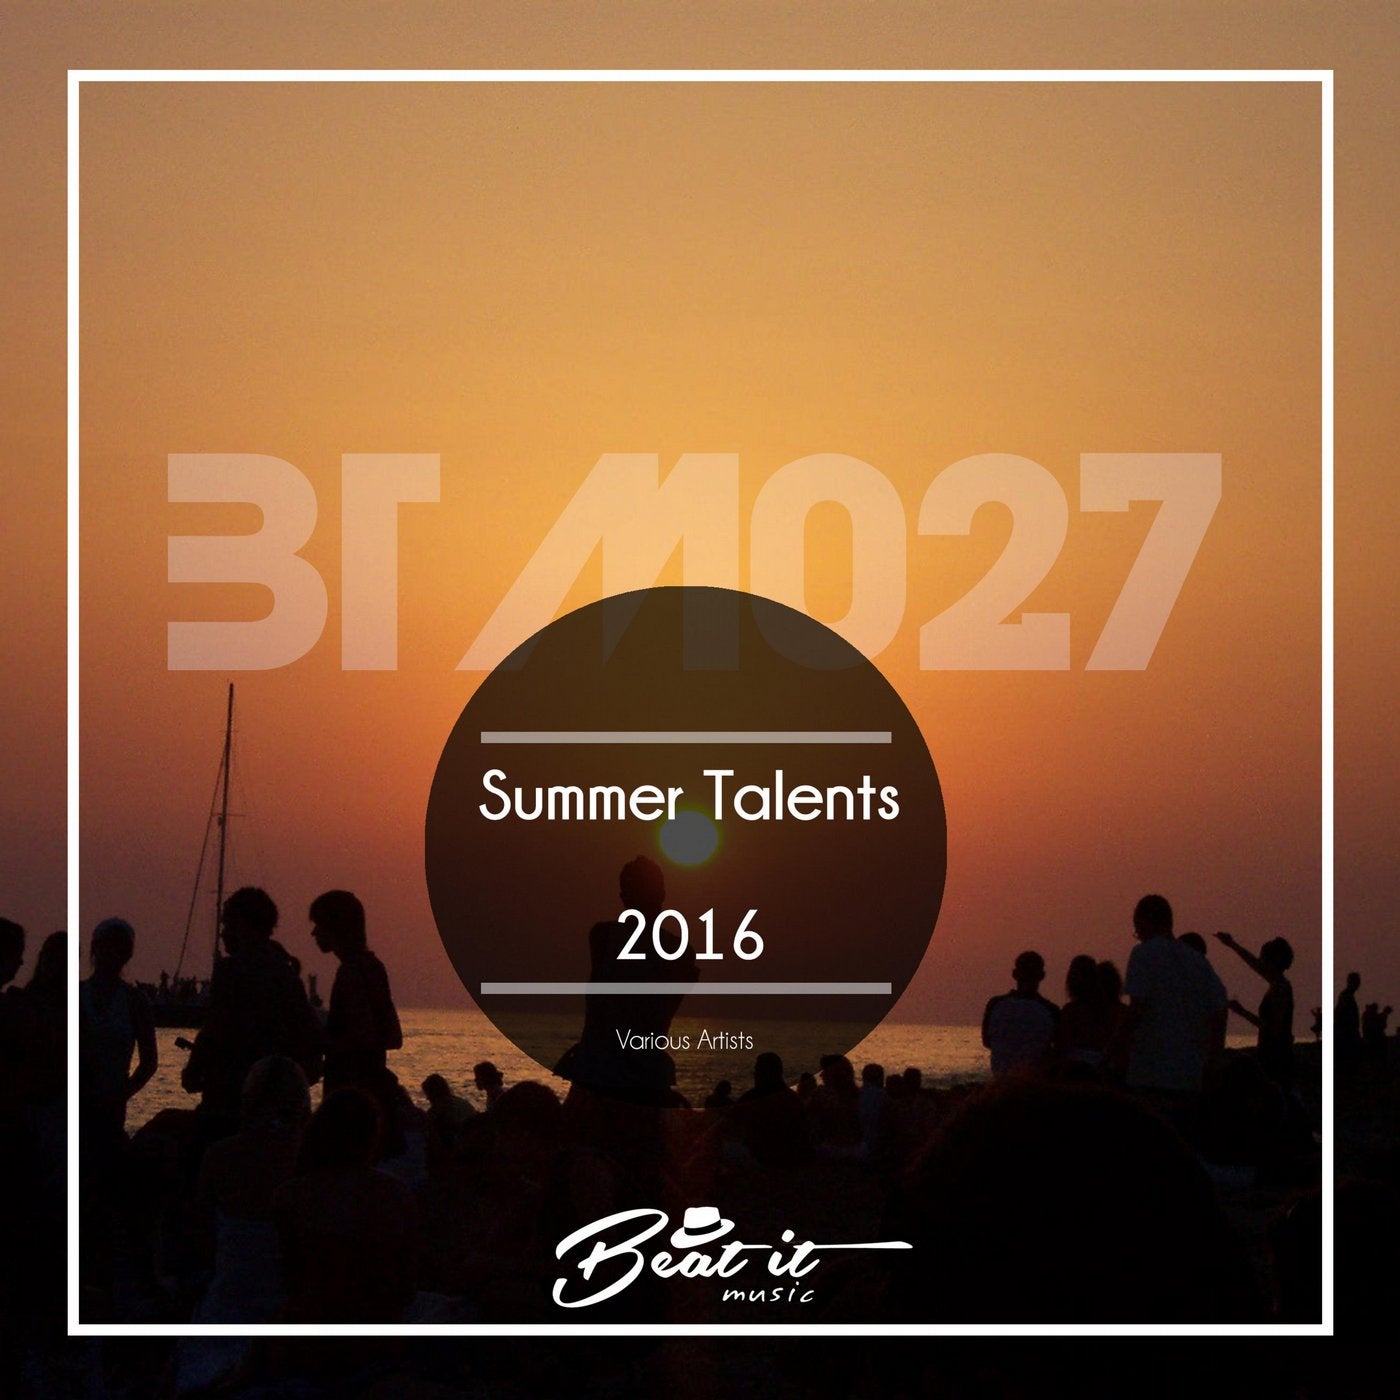 Summer Talents 2016